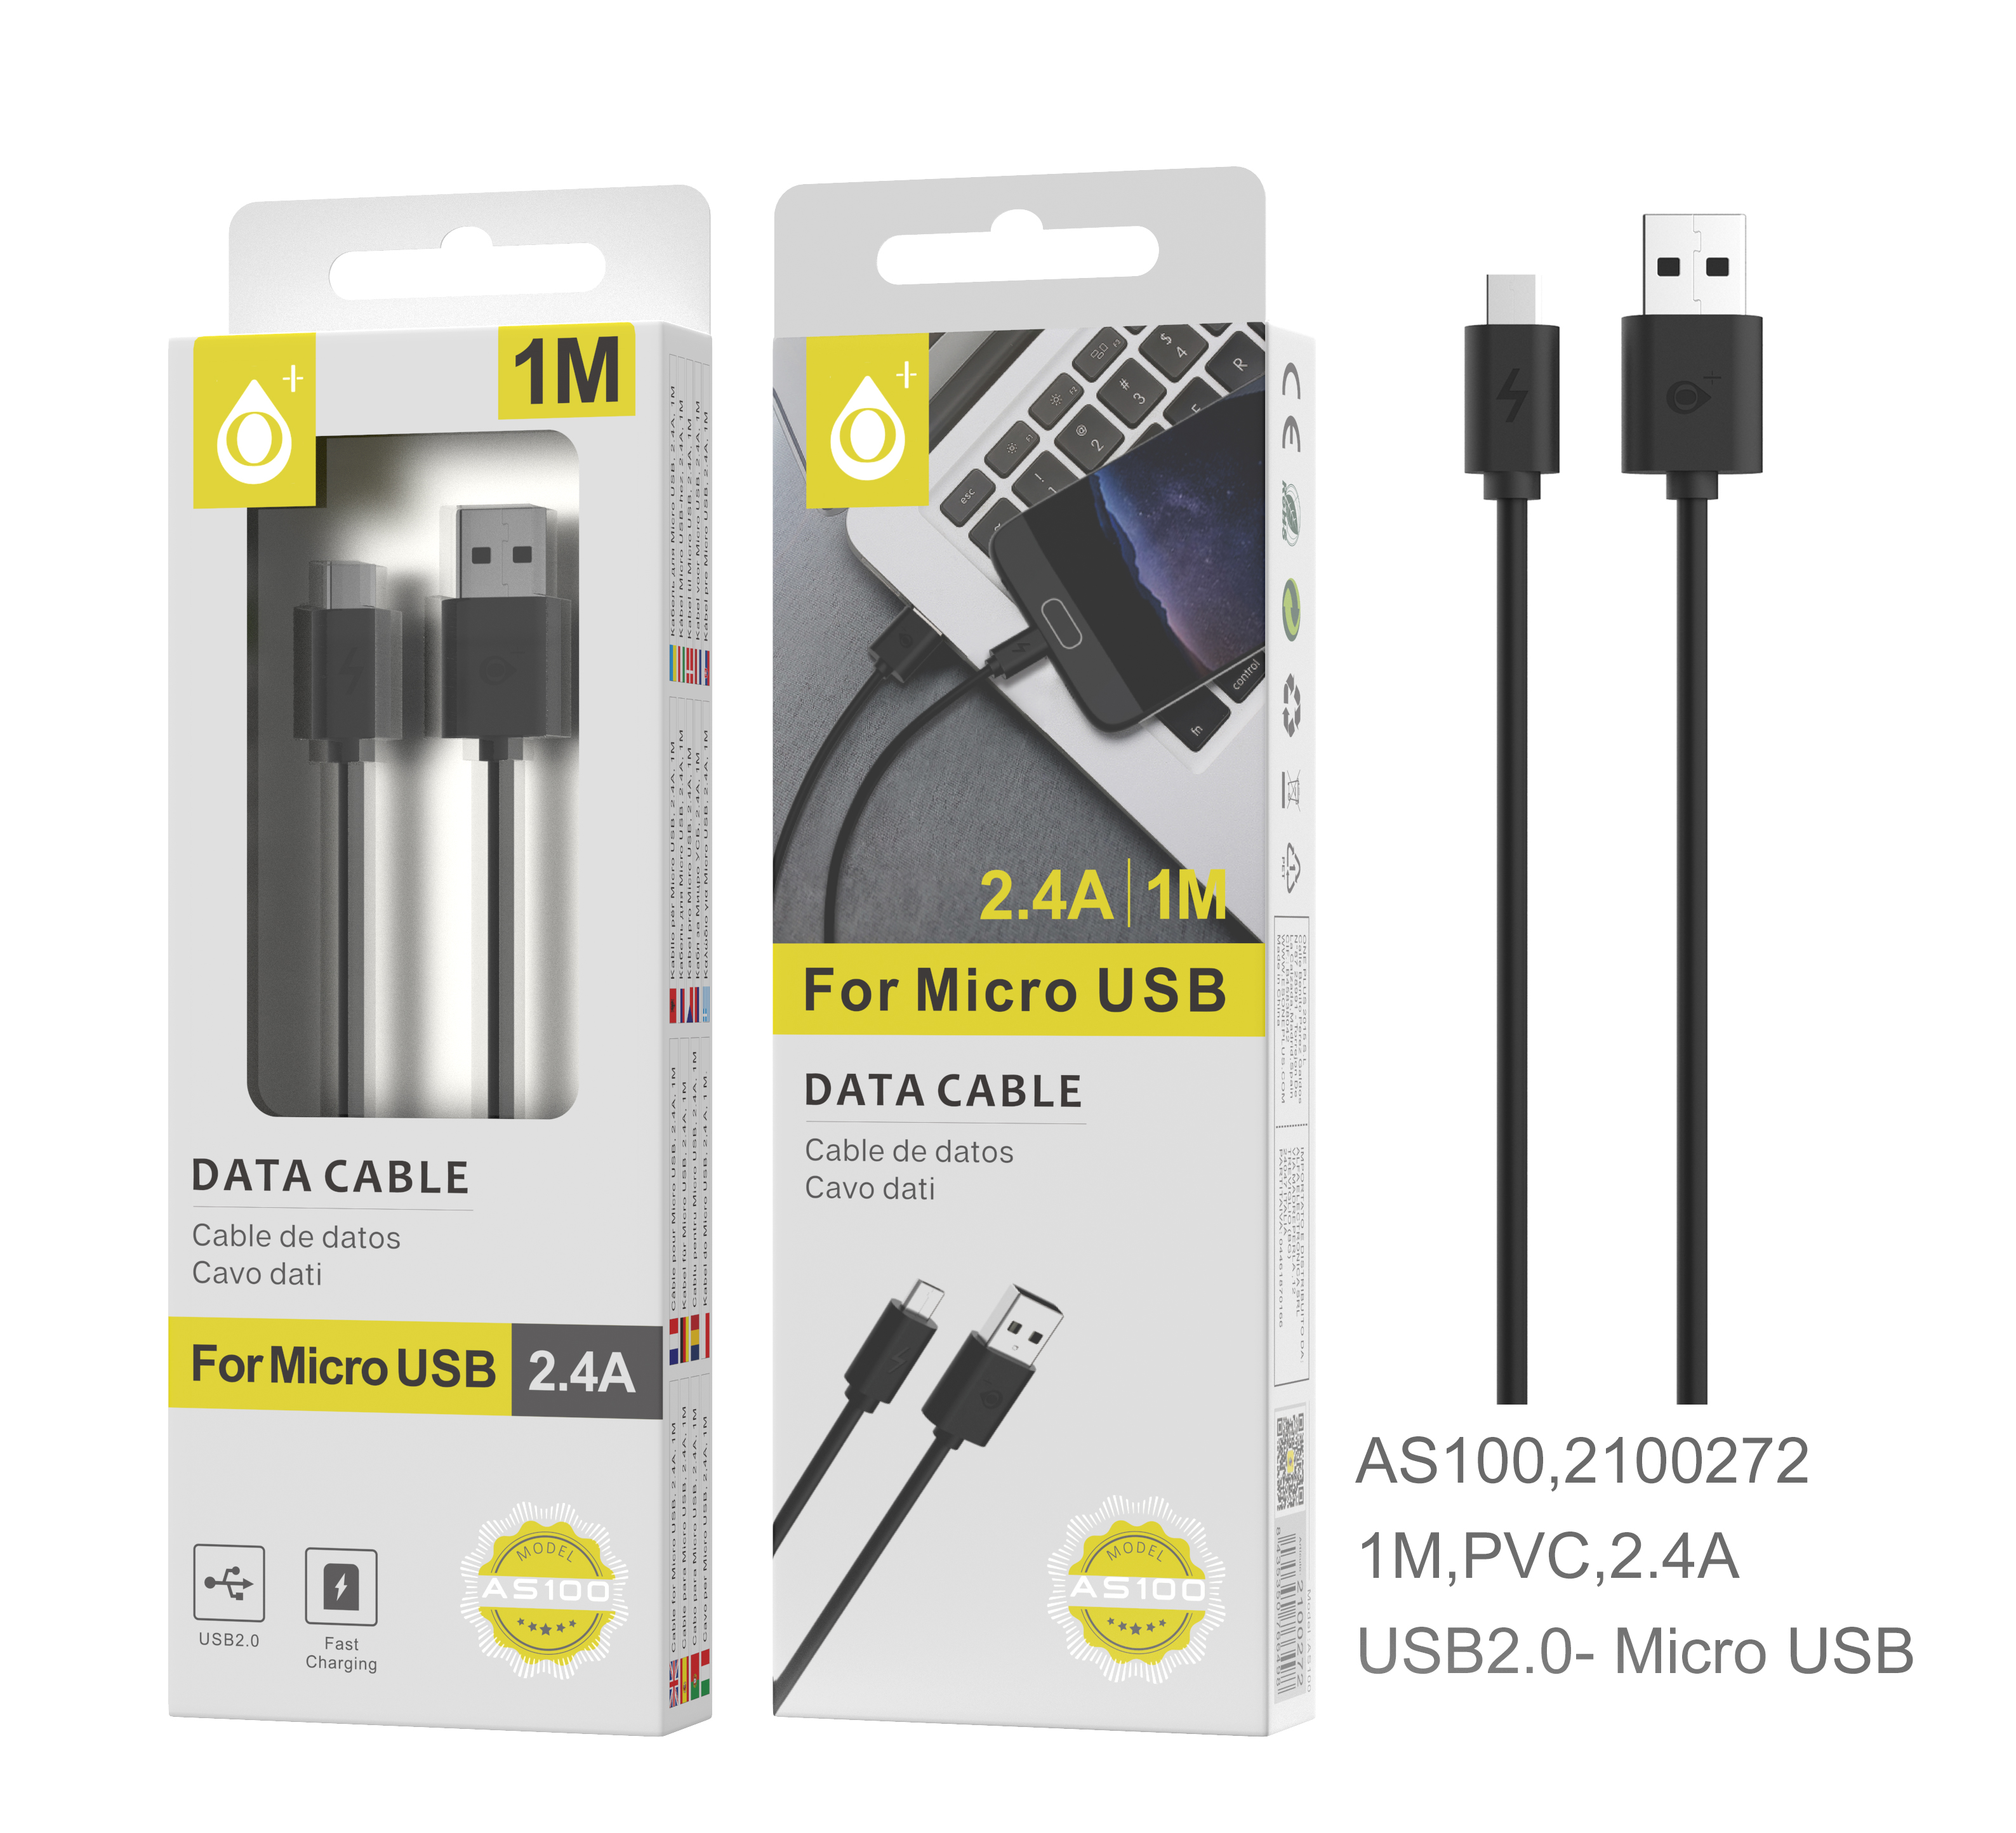 23102002 AS100 NE Cable de datos ONE de Micro USB 2A, 1M, Negro